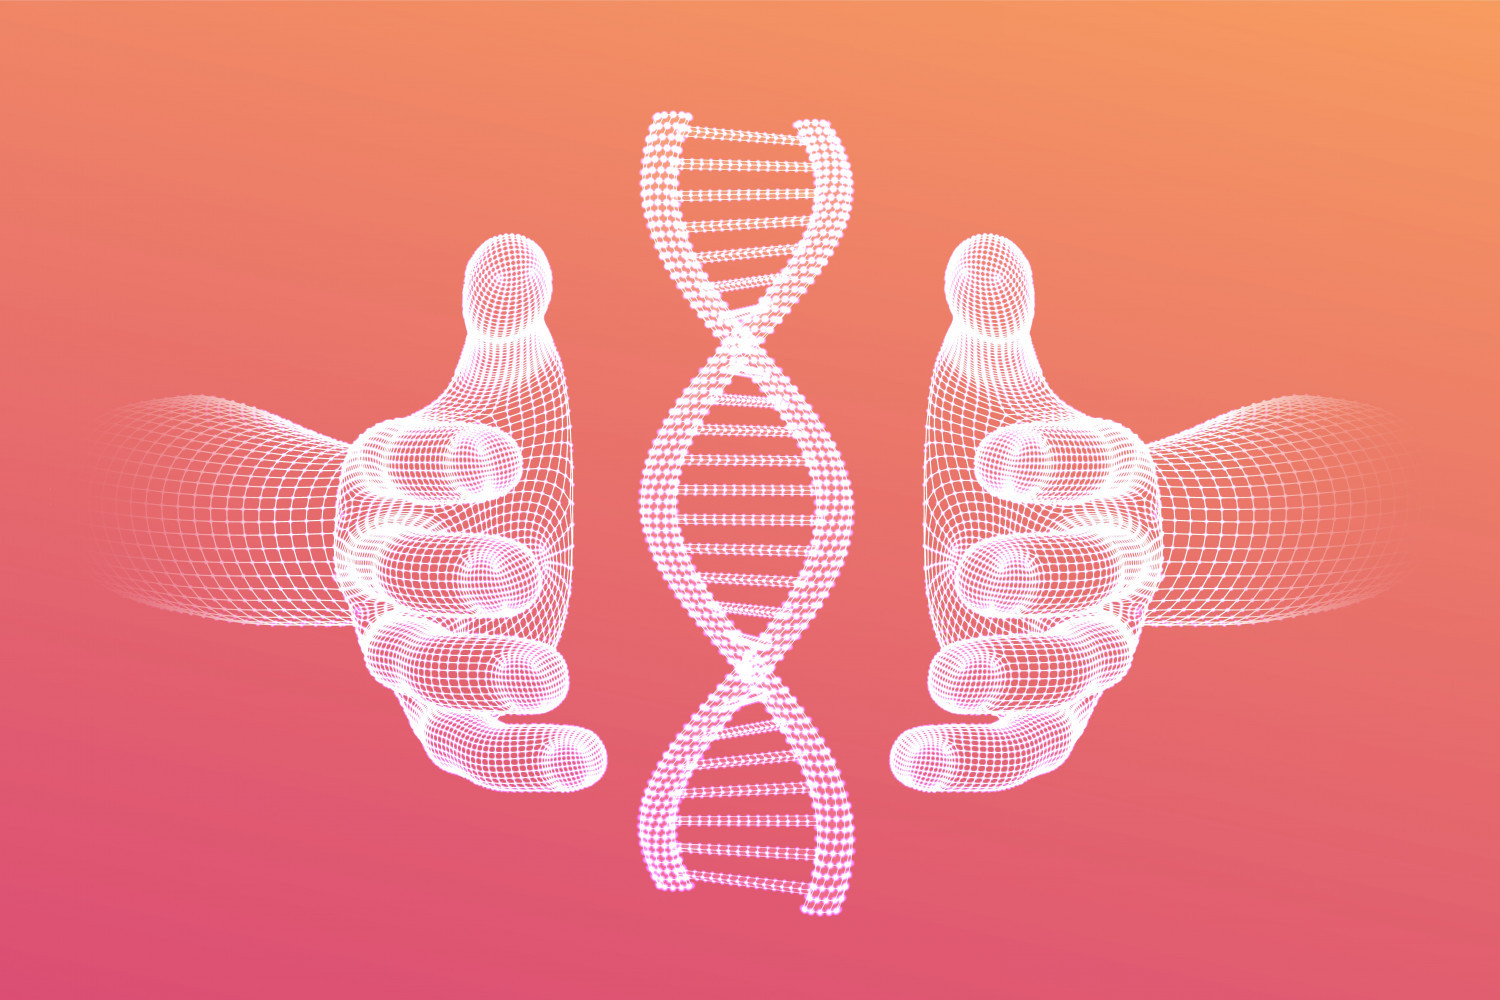 Геномные технологии